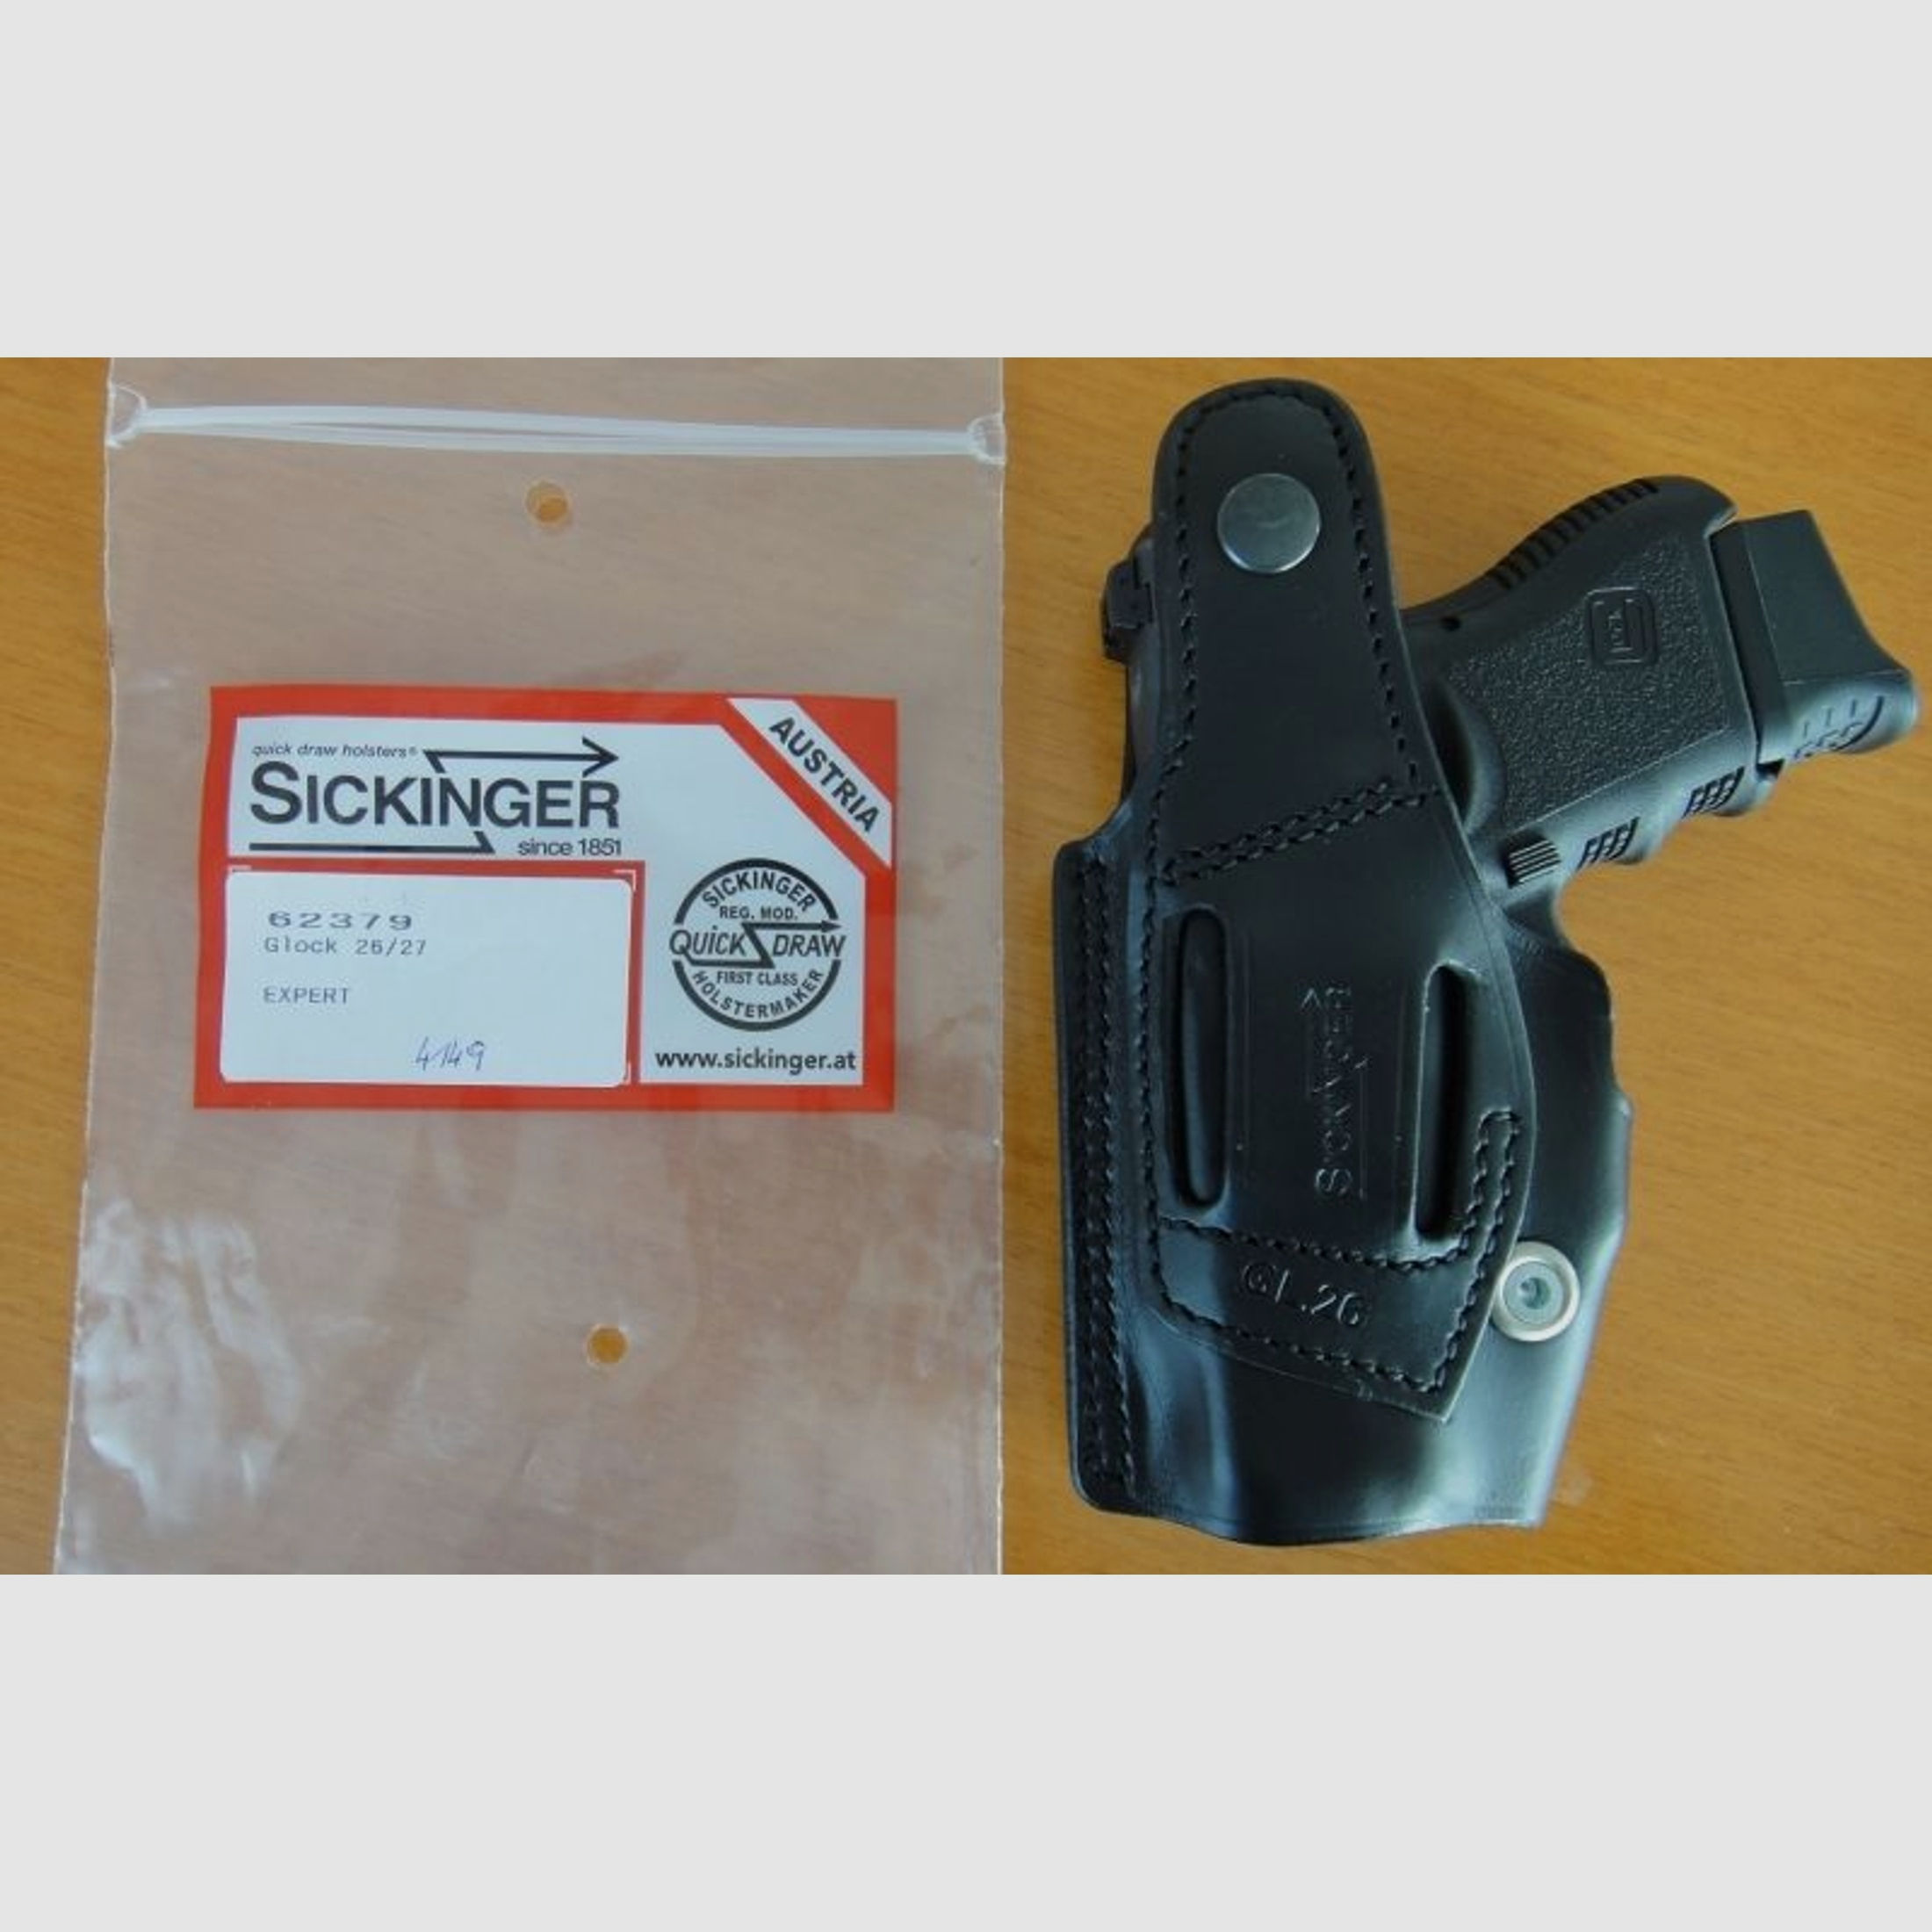 Sickinger	 Sickinger Holster EXPERT schwarz für SL-Pistole Glock 26/27